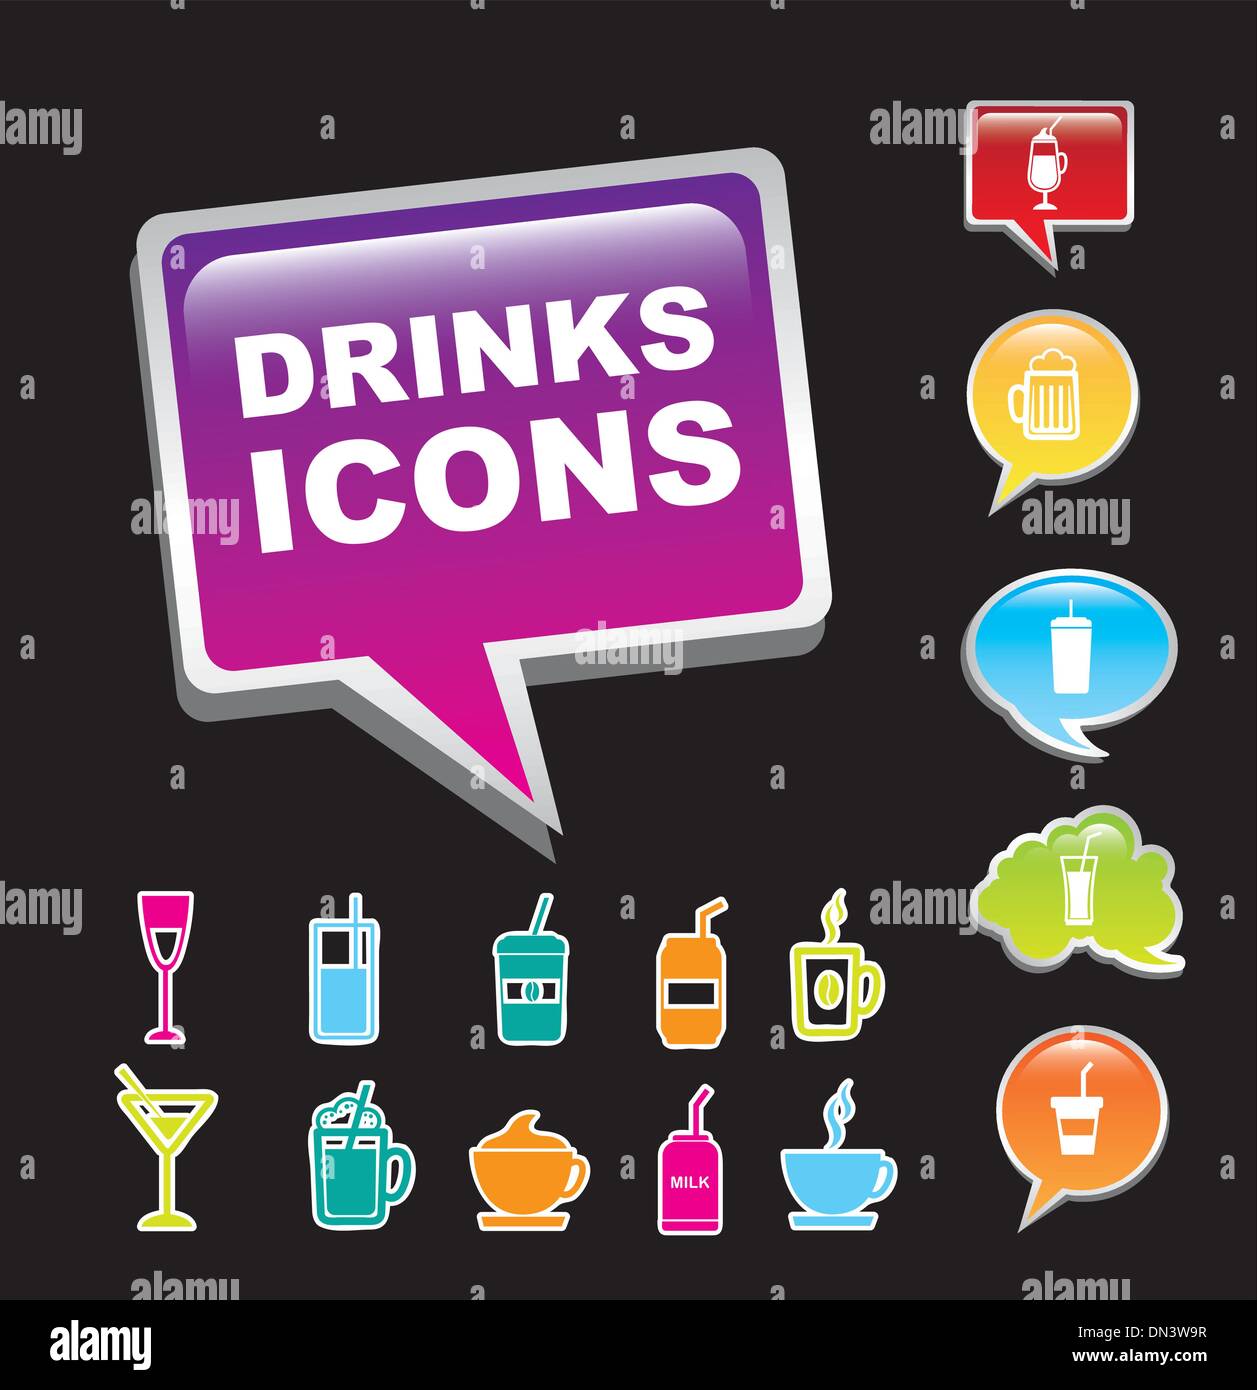 Iconos De Bebidas Imágenes Vectoriales De Stock Alamy 4972